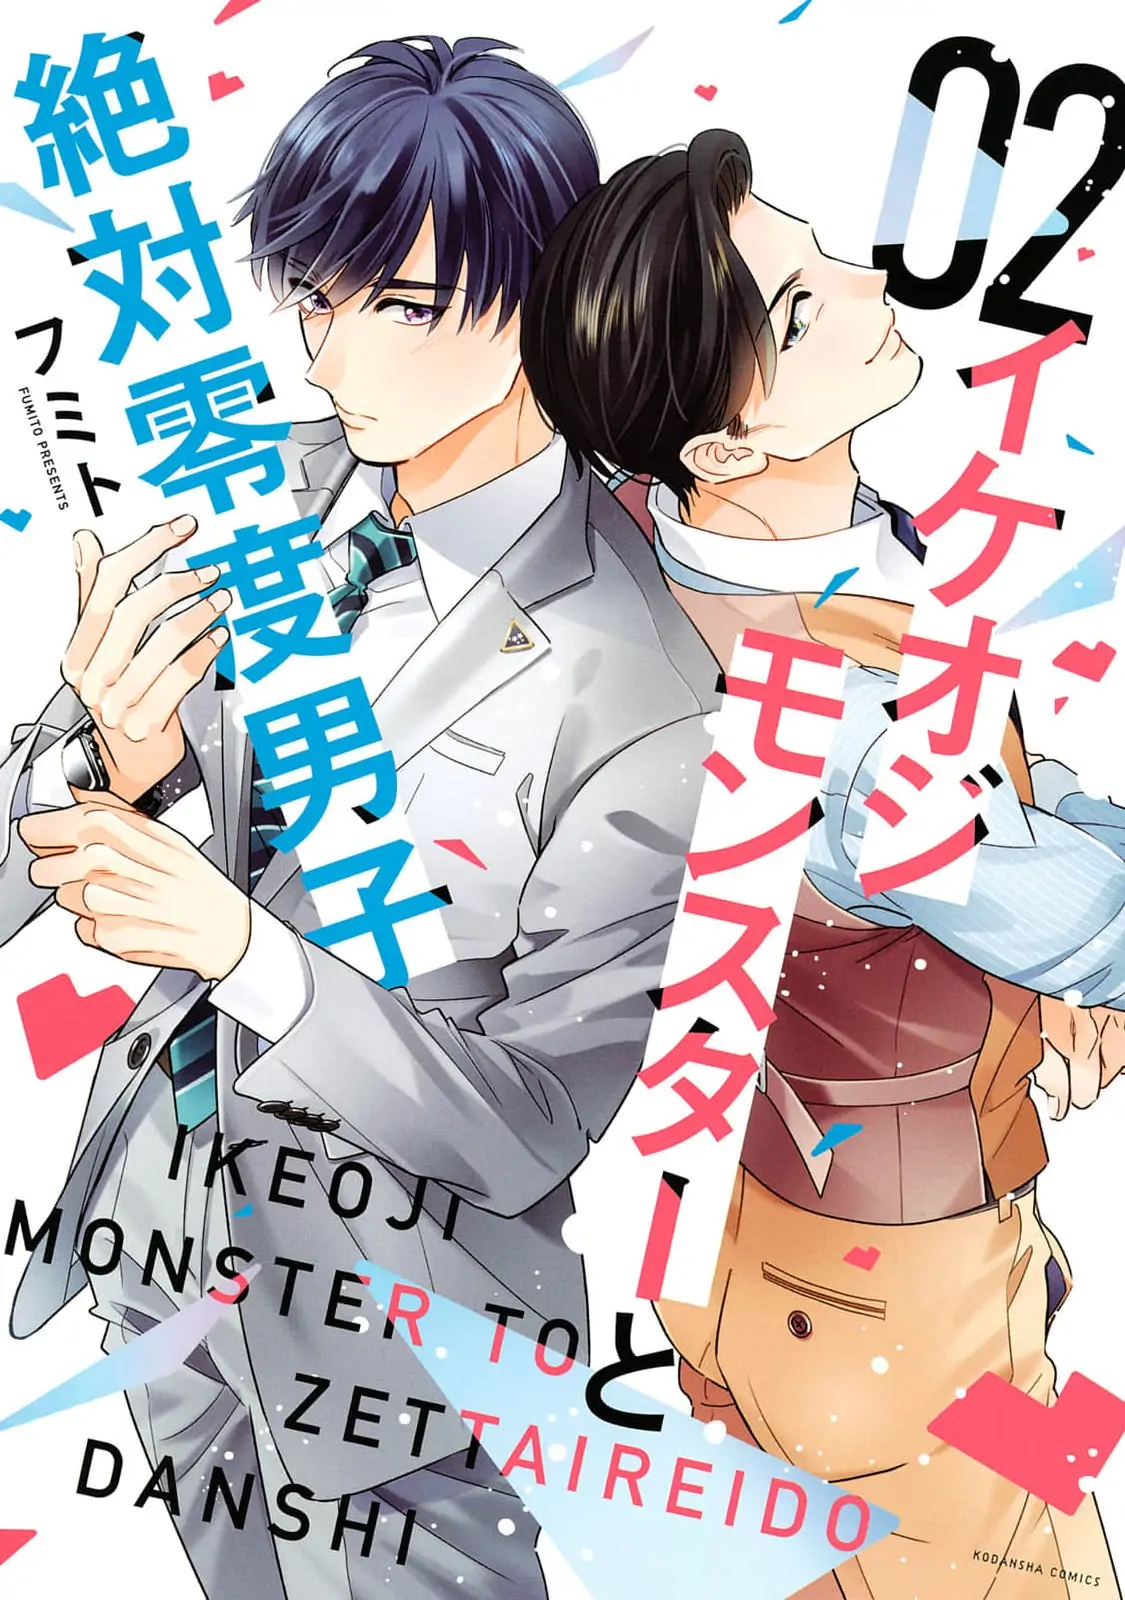 Ikeoji Monster to Zettai Reido Danshi - chapter 7 - #2